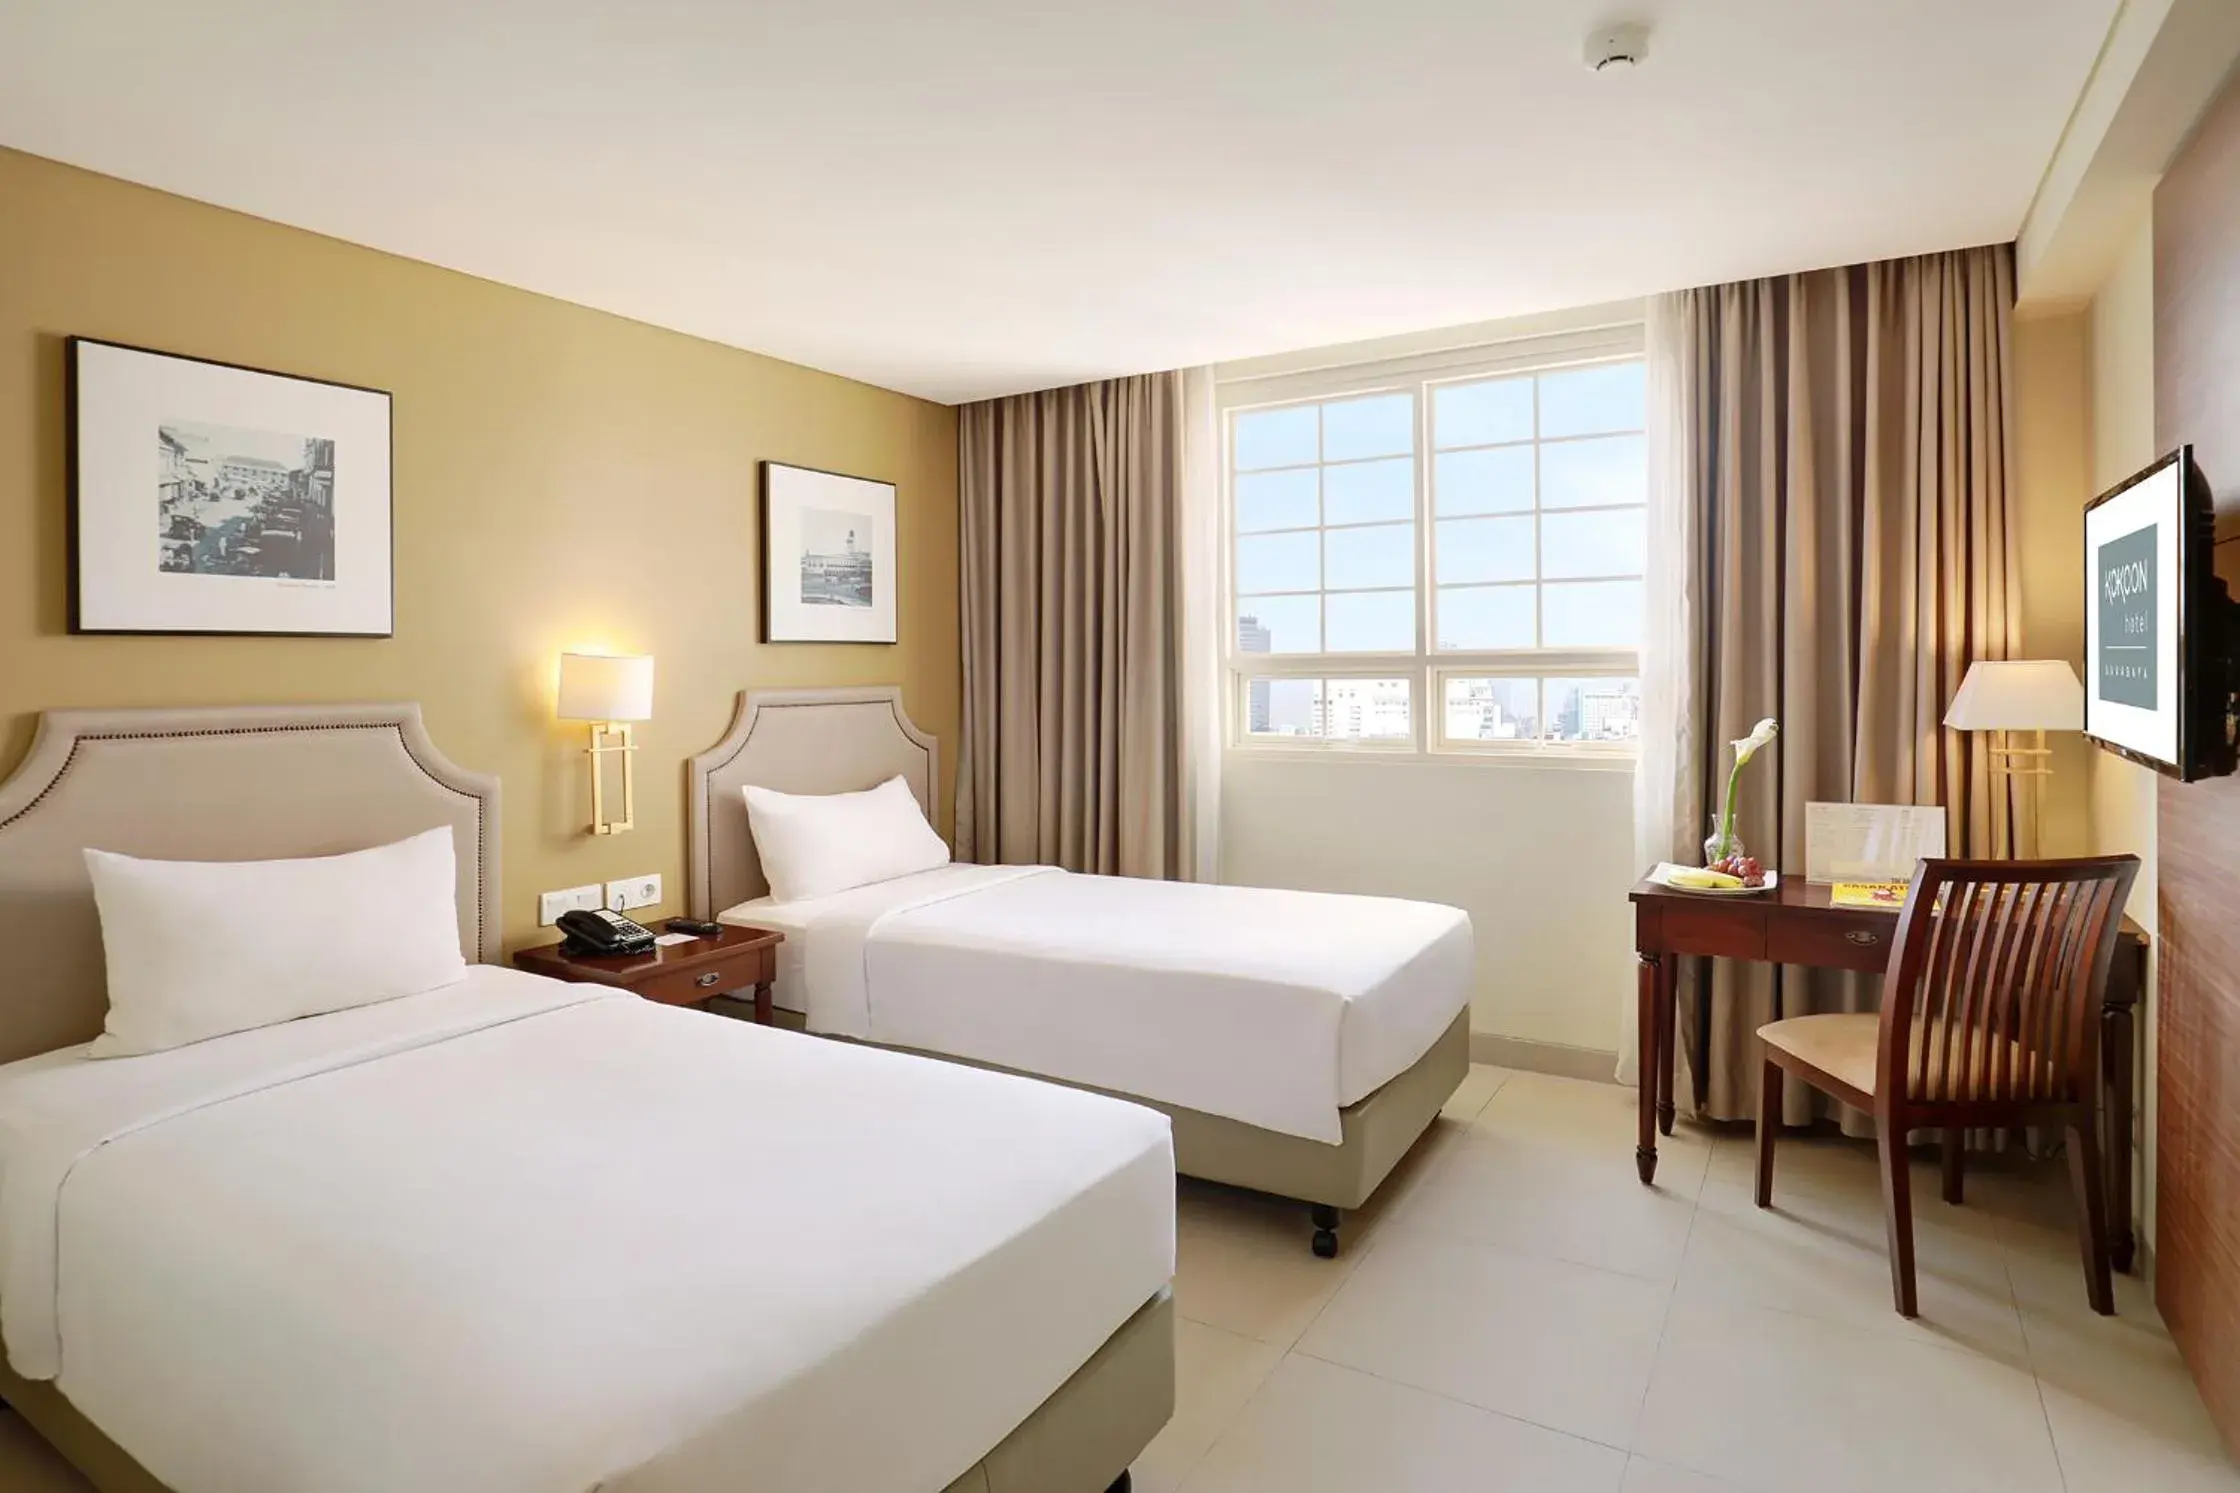 Bed, Room Photo in Kokoon Hotel Surabaya